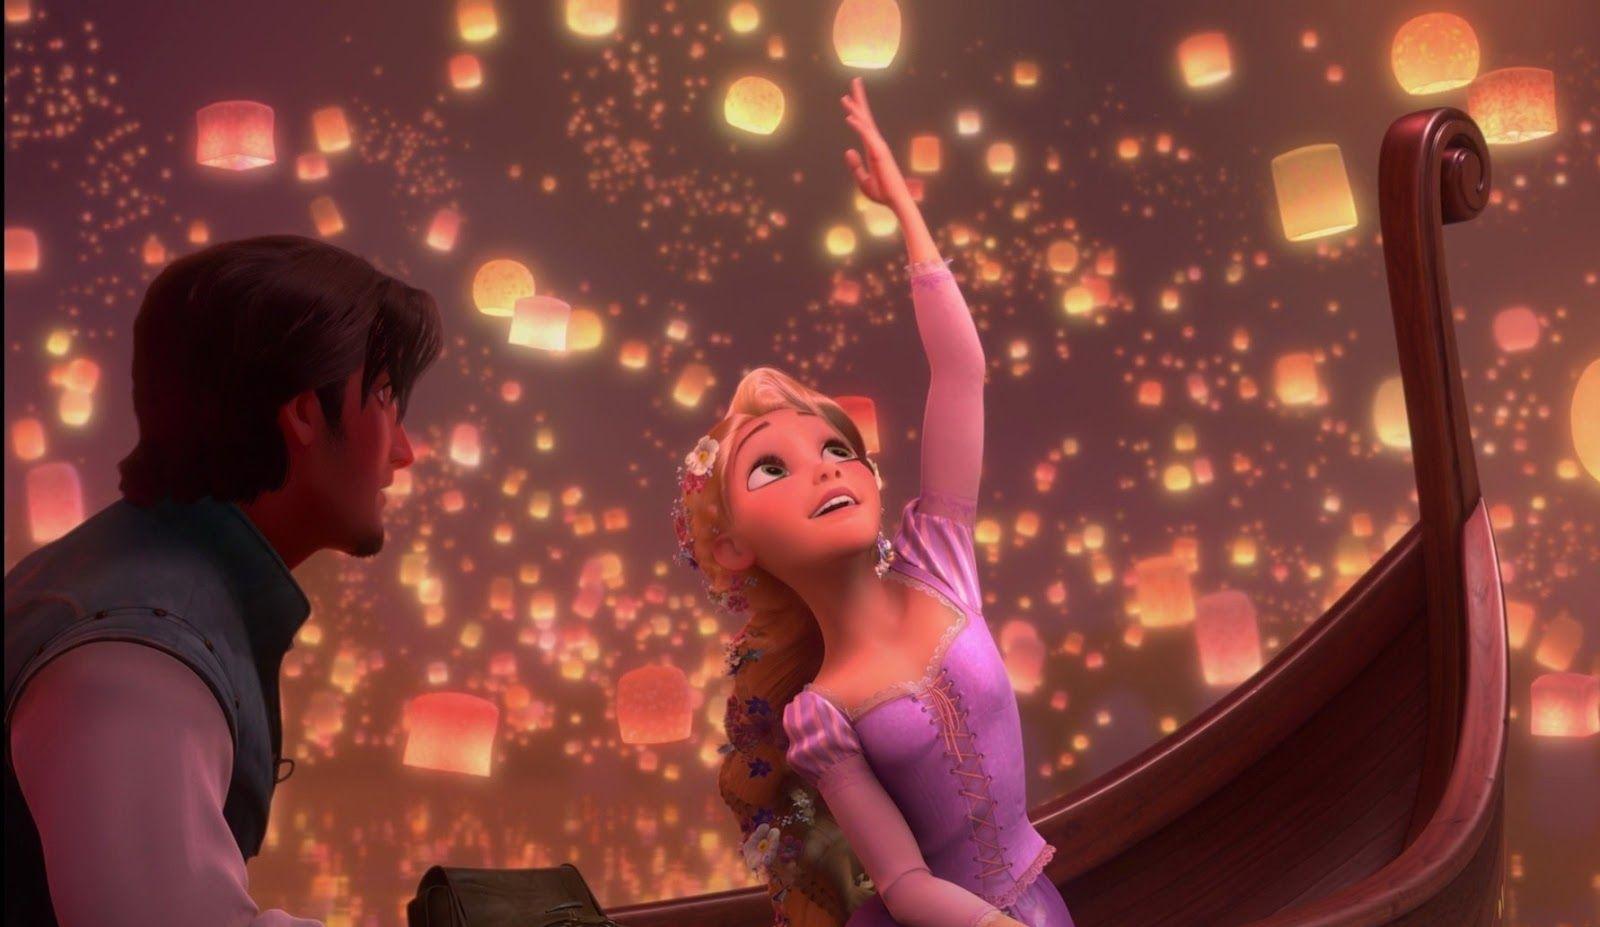 Rapunzel Eugene Picture Tangled Movie. Kids Online World Blog